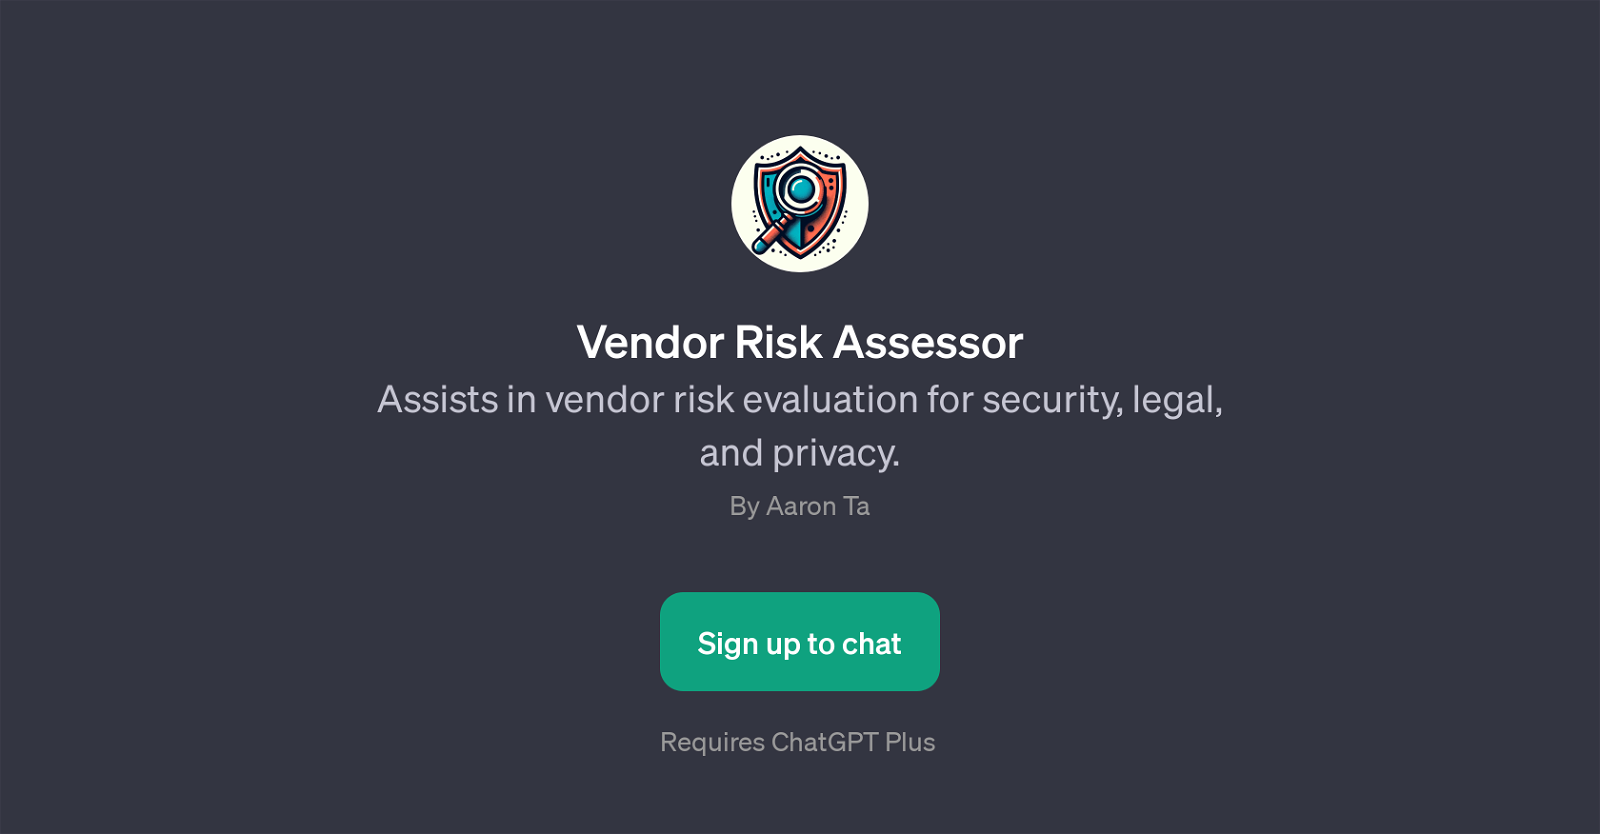 Vendor Risk Assessor website